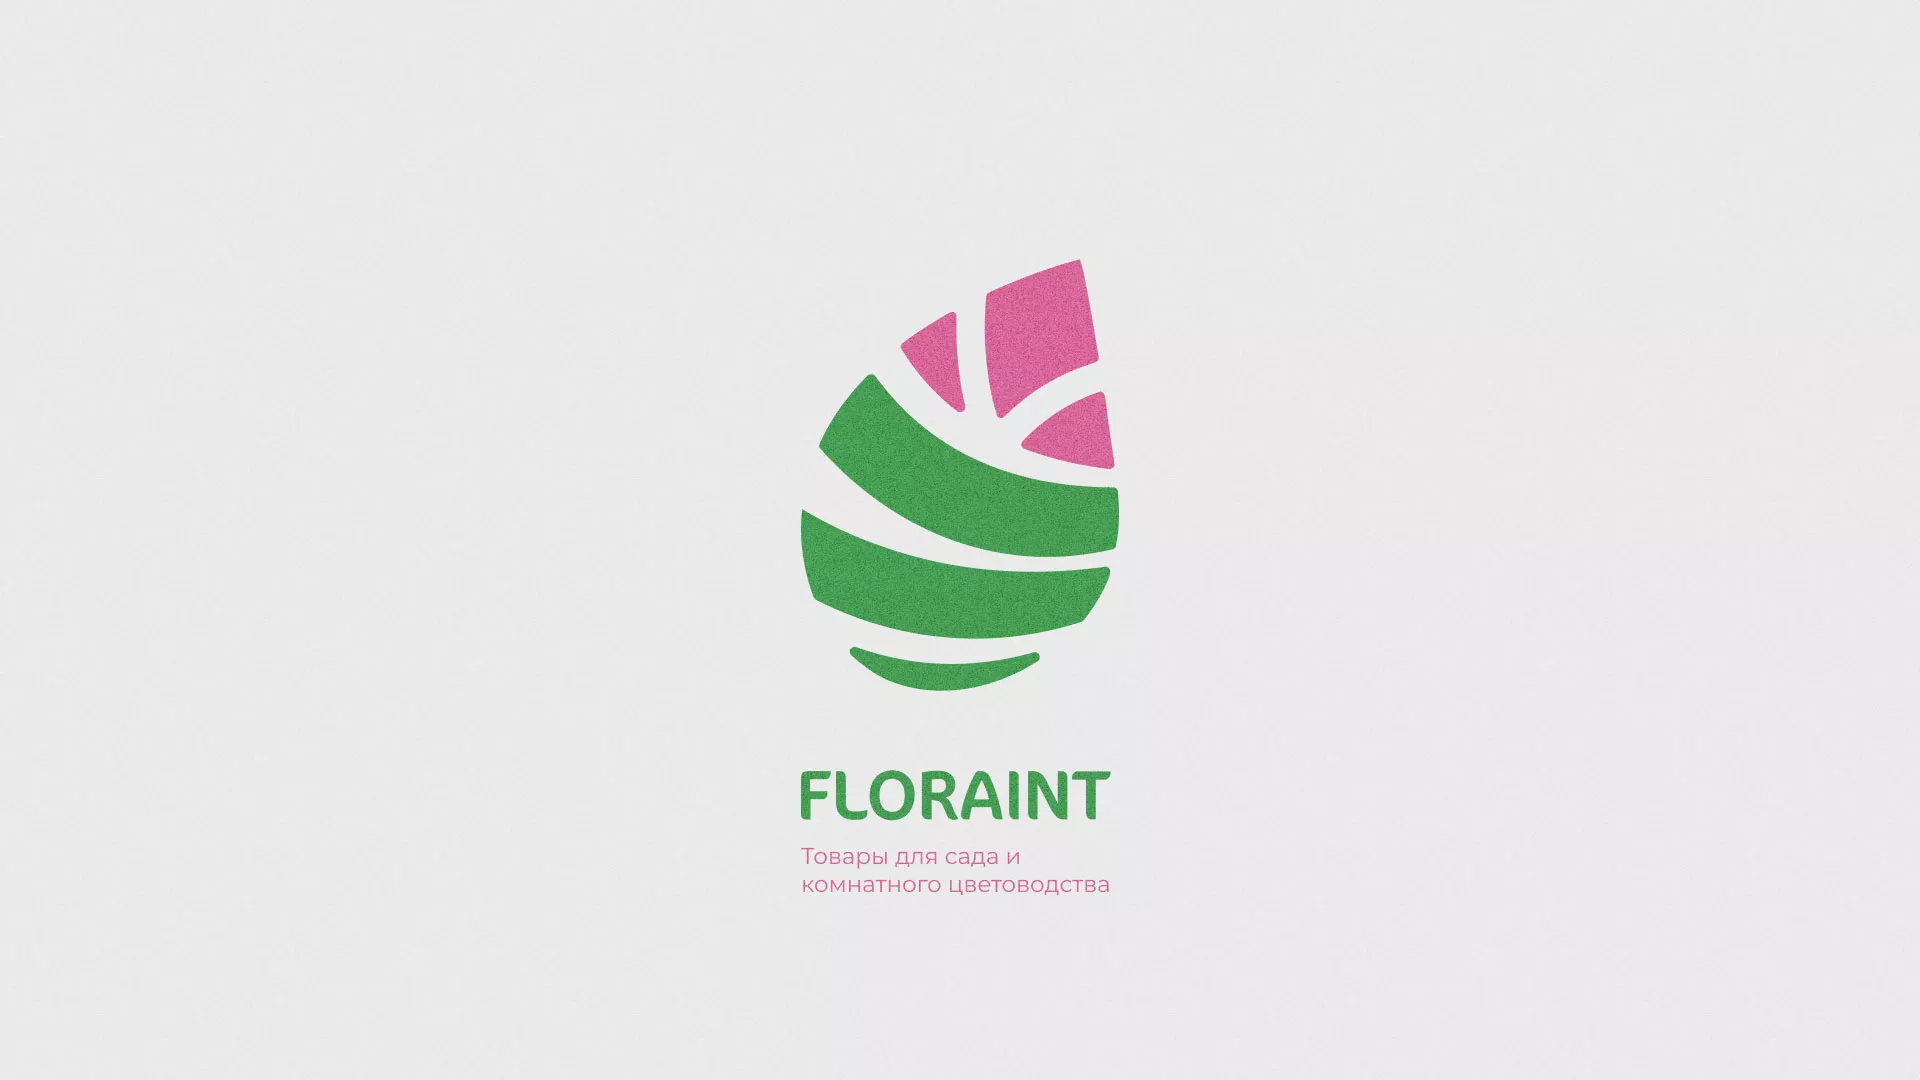 Разработка оформления профиля Instagram для магазина «Floraint» в Старой Руссе